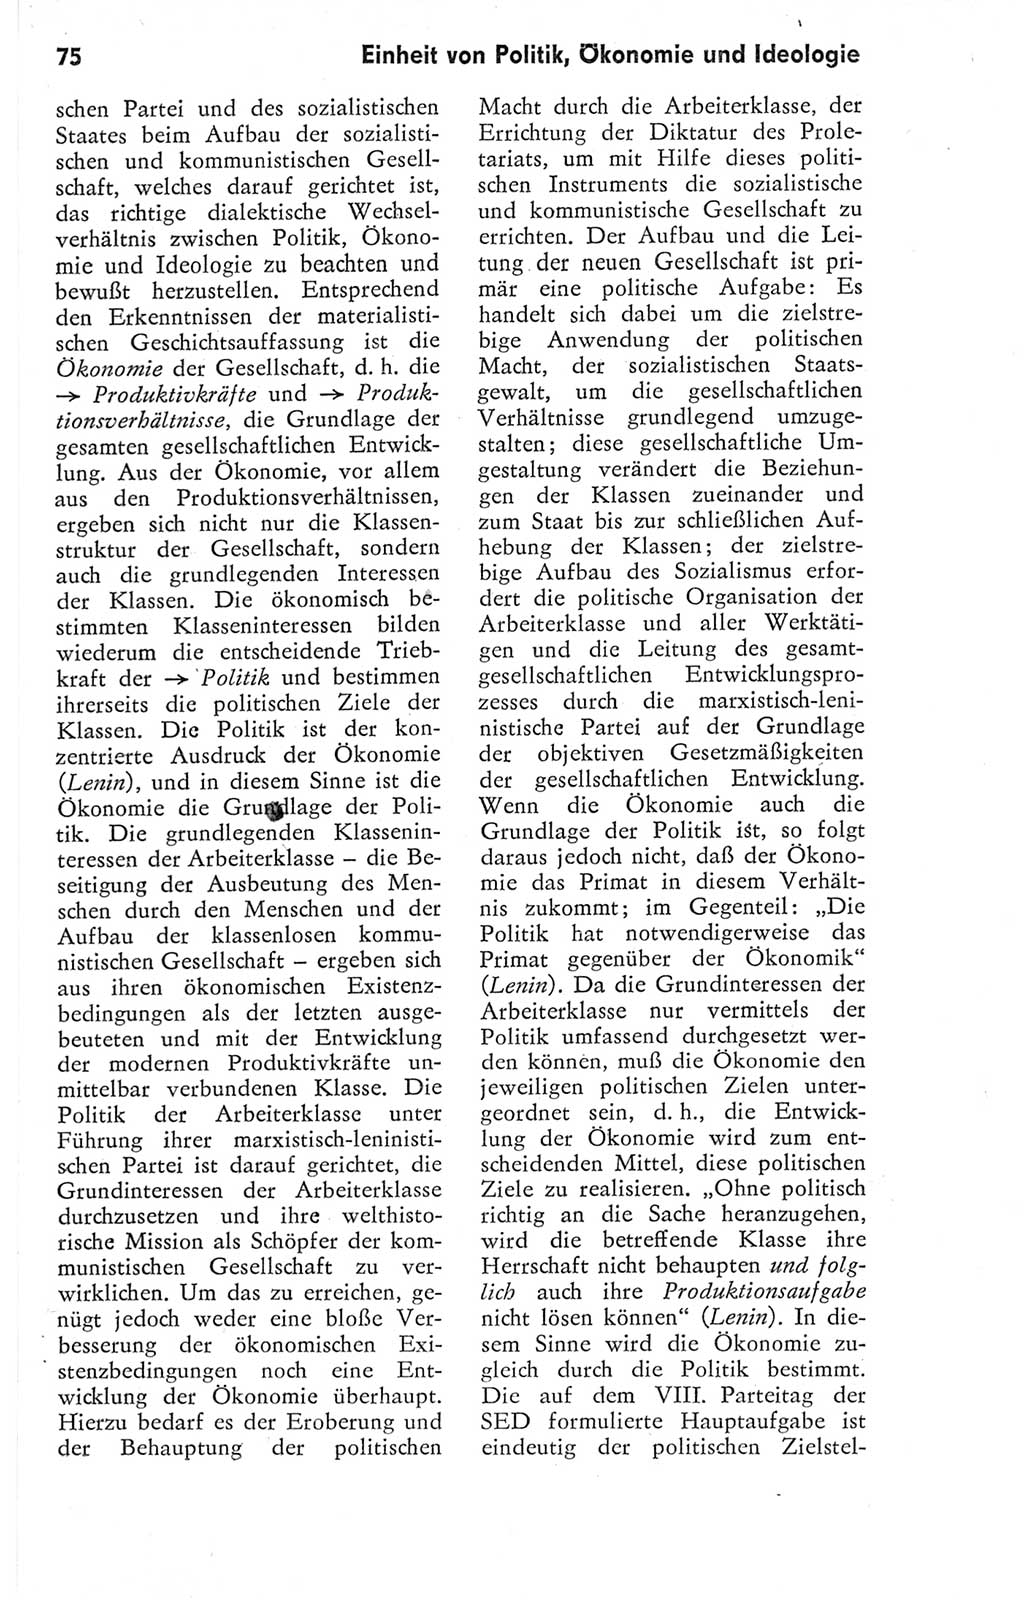 Kleines Wörterbuch der marxistisch-leninistischen Philosophie [Deutsche Demokratische Republik (DDR)] 1974, Seite 75 (Kl. Wb. ML Phil. DDR 1974, S. 75)